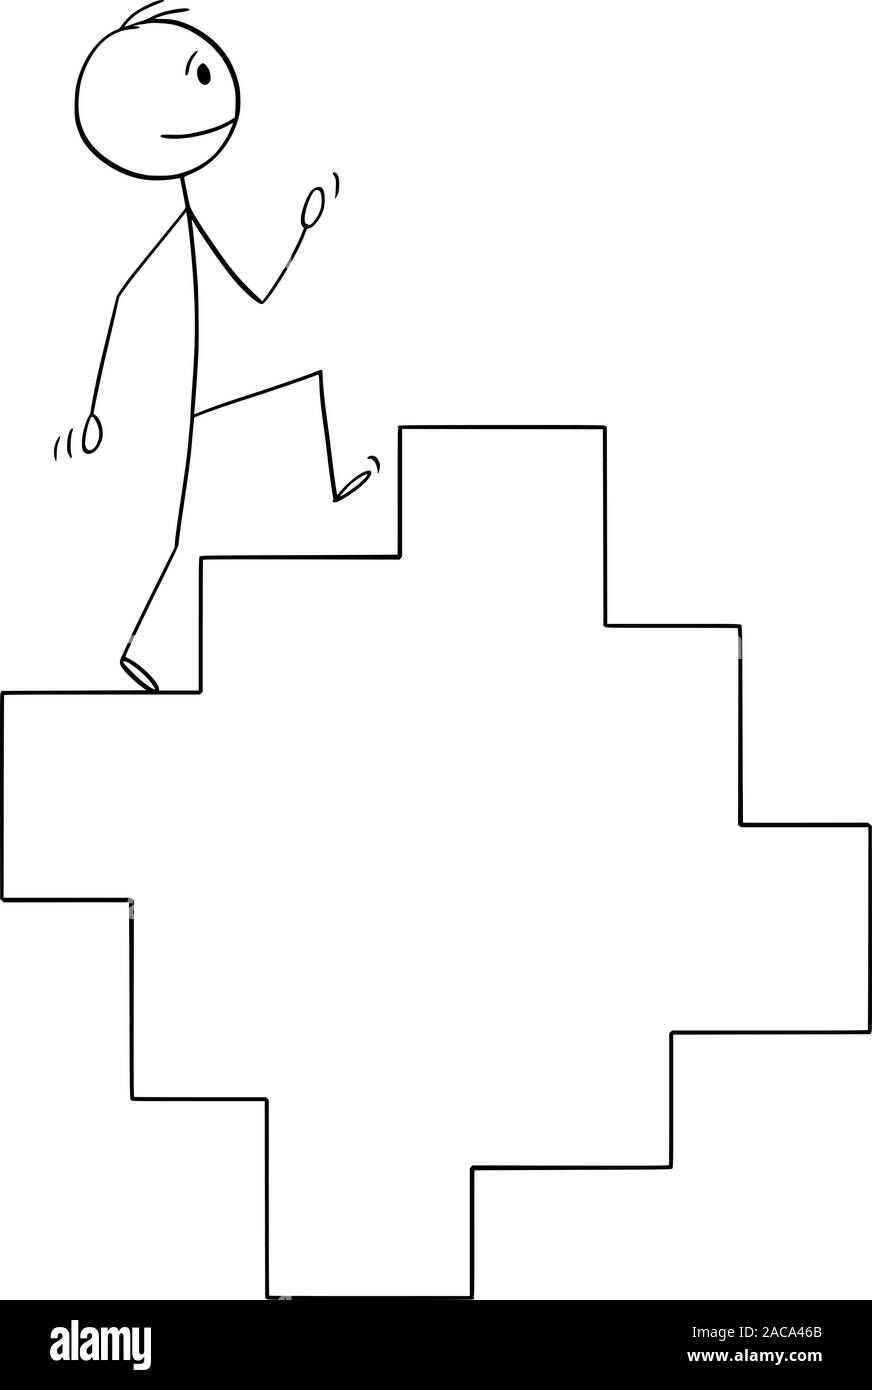 Vektor cartoon Strichmännchen Zeichnen konzeptionelle Darstellung der Mann oder Geschäftsmann auf endlose Treppe, Treppe oder Treppen im cycle. Stock Vektor